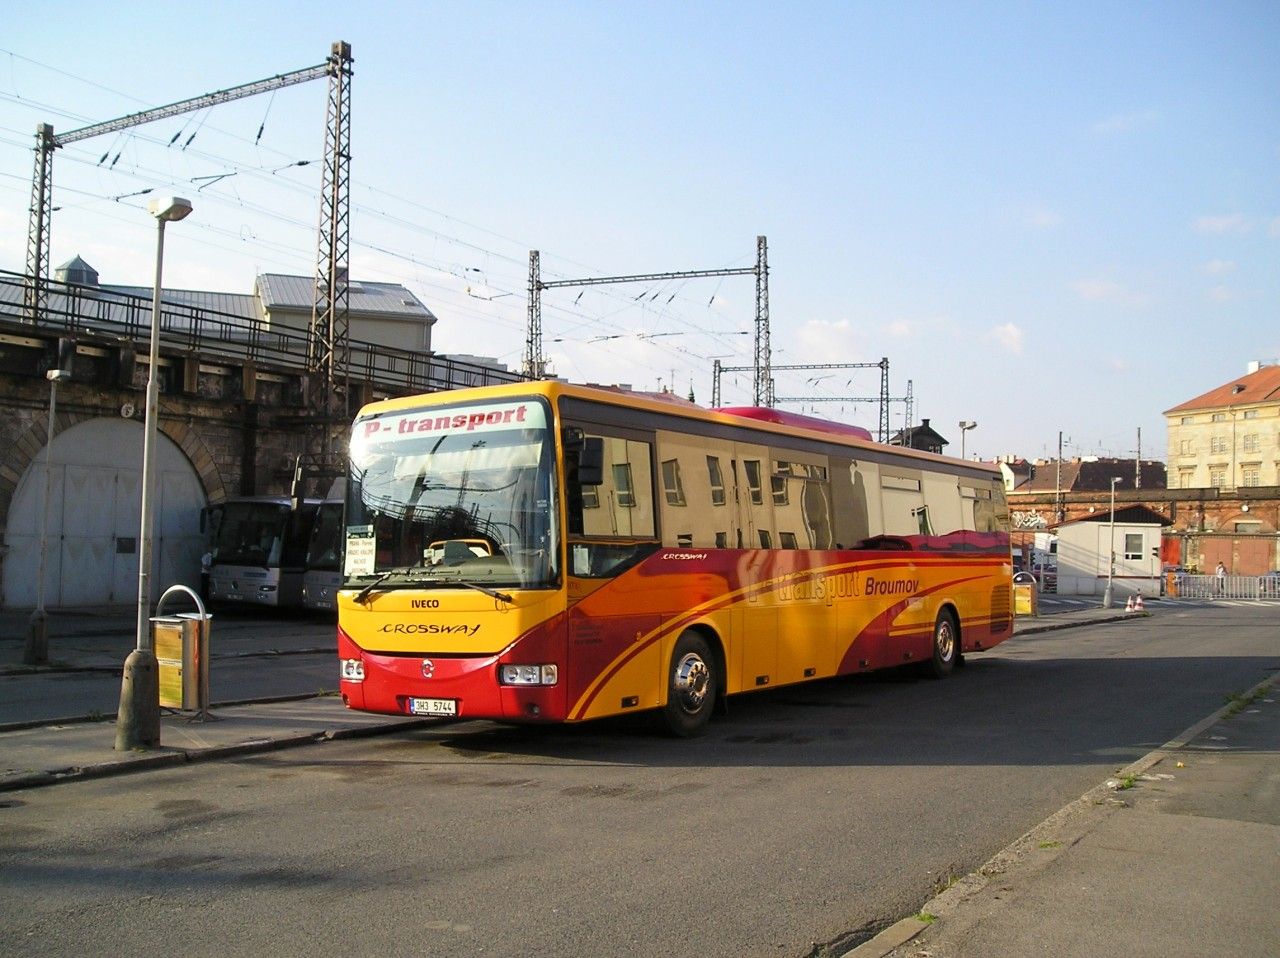 Irisbus Crossway, 3H3 5744, P - transport Broumov, 9.5.2008